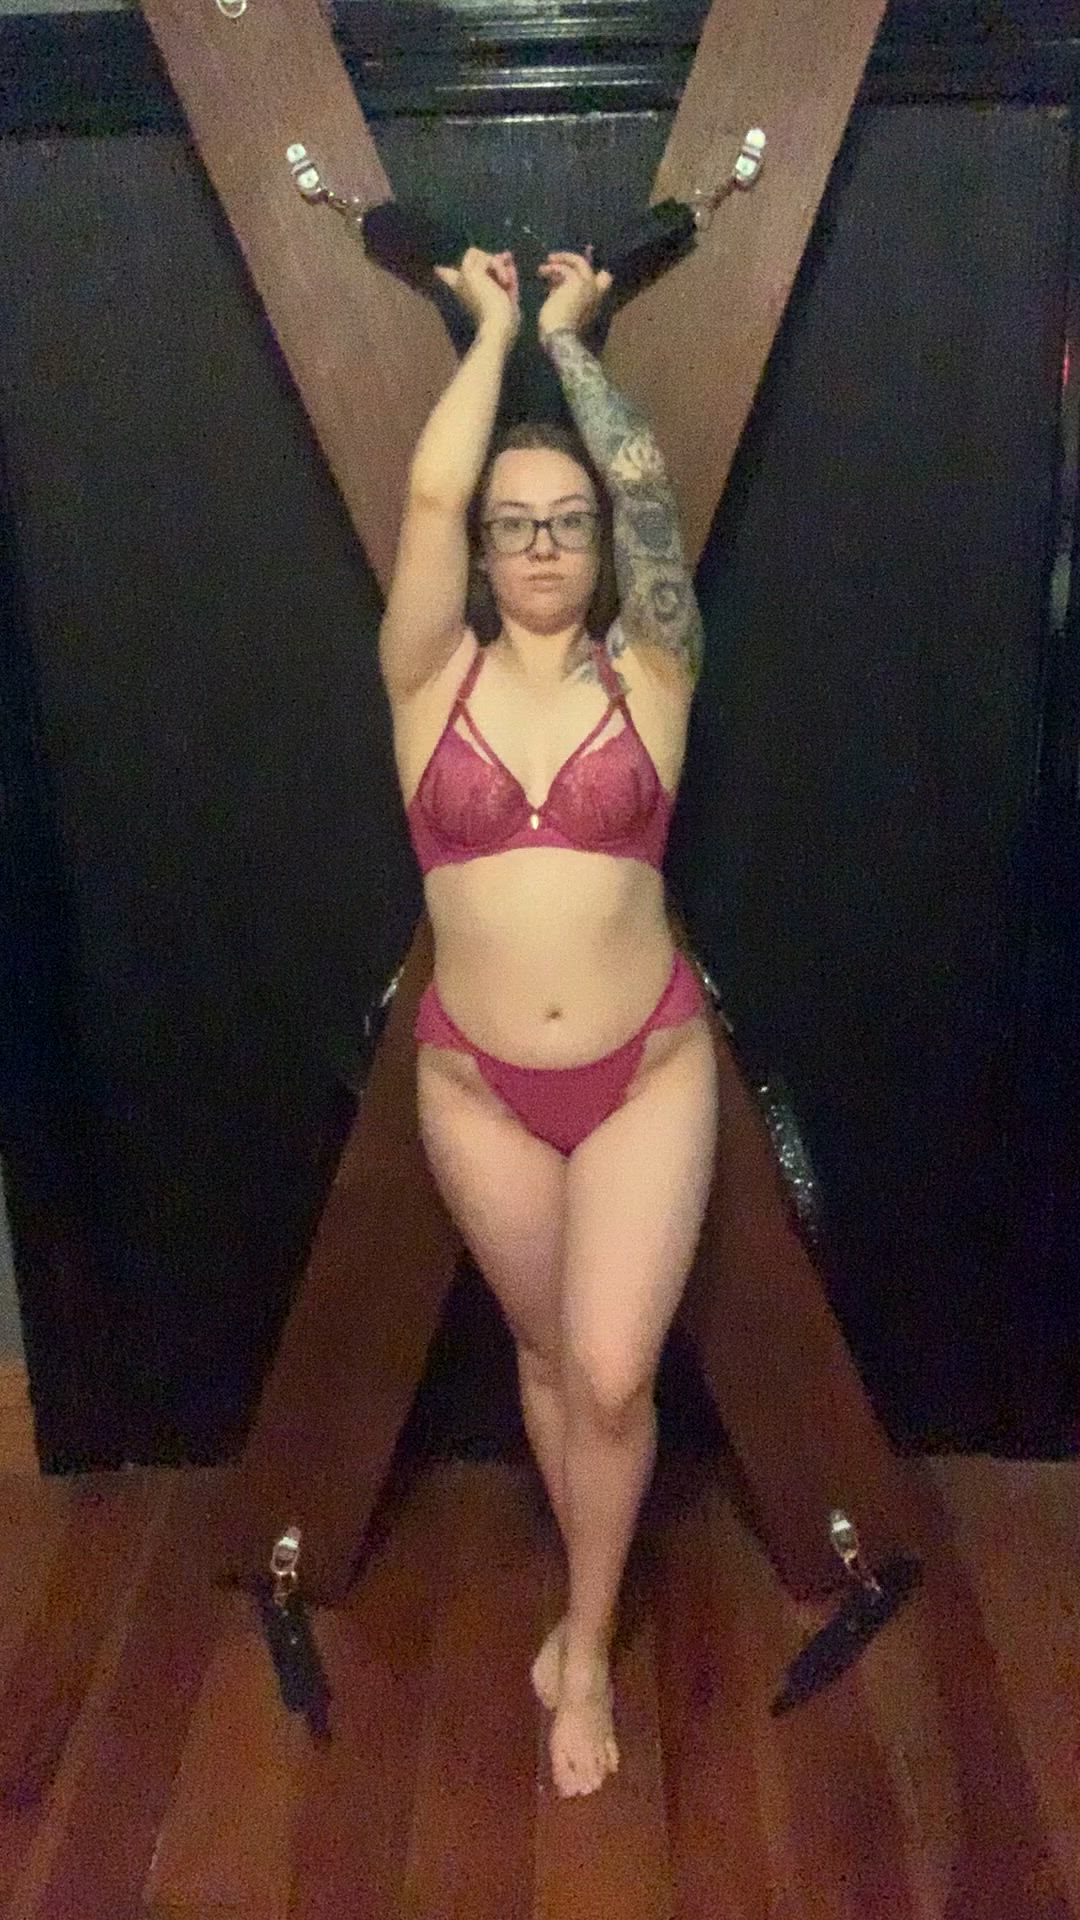 Ass porn video with onlyfans model teachertia <strong>@teachertia</strong>